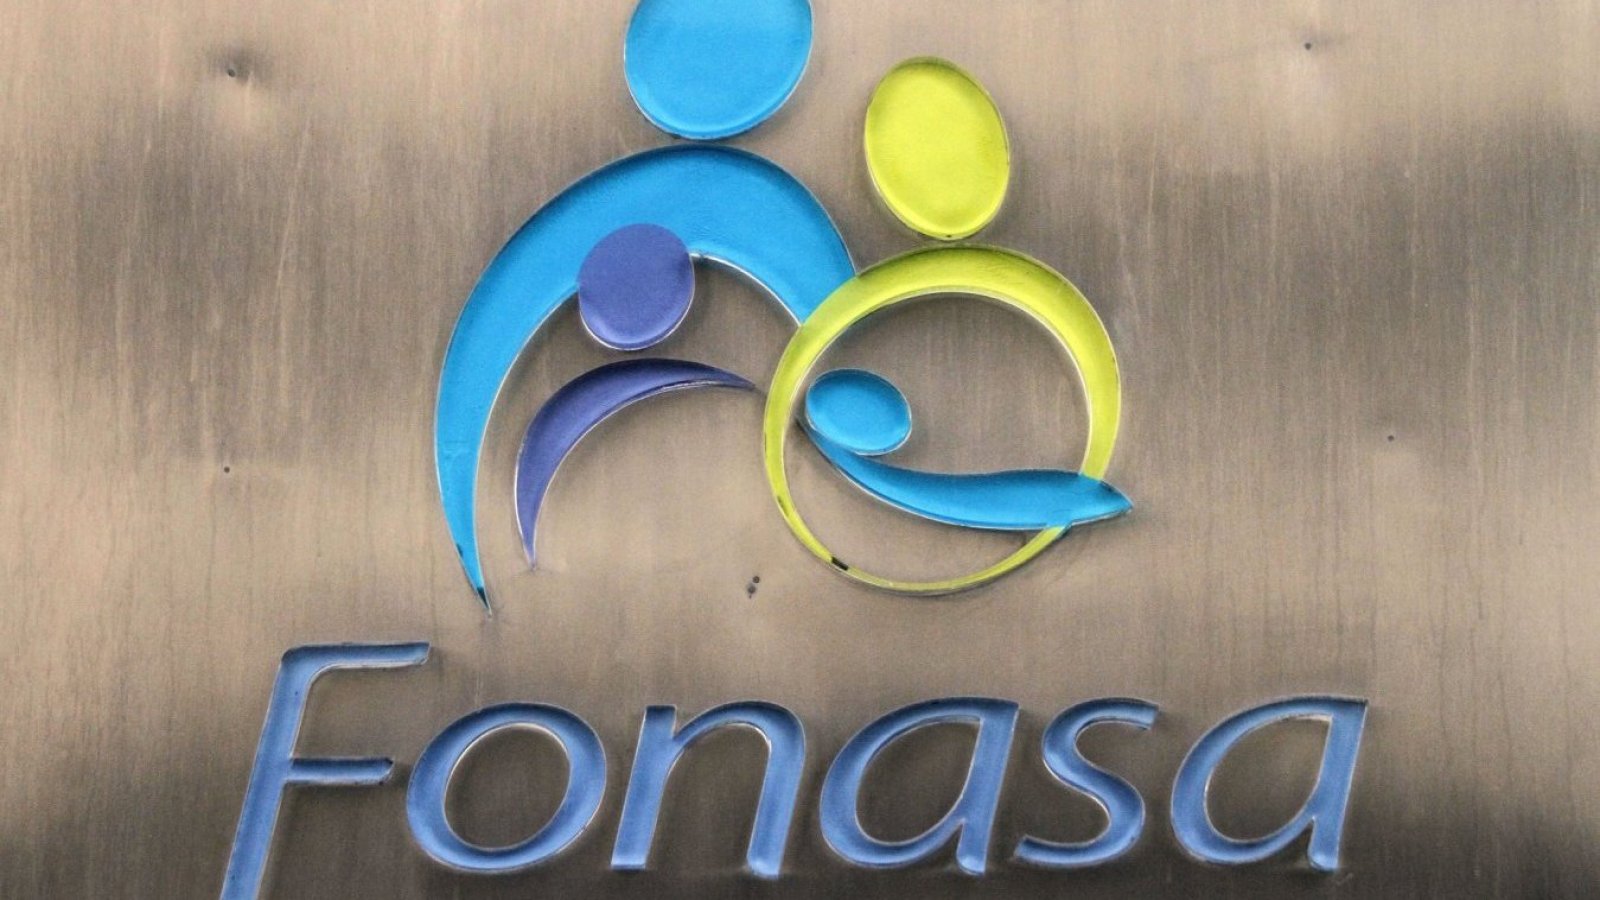 Logo de Fonasa